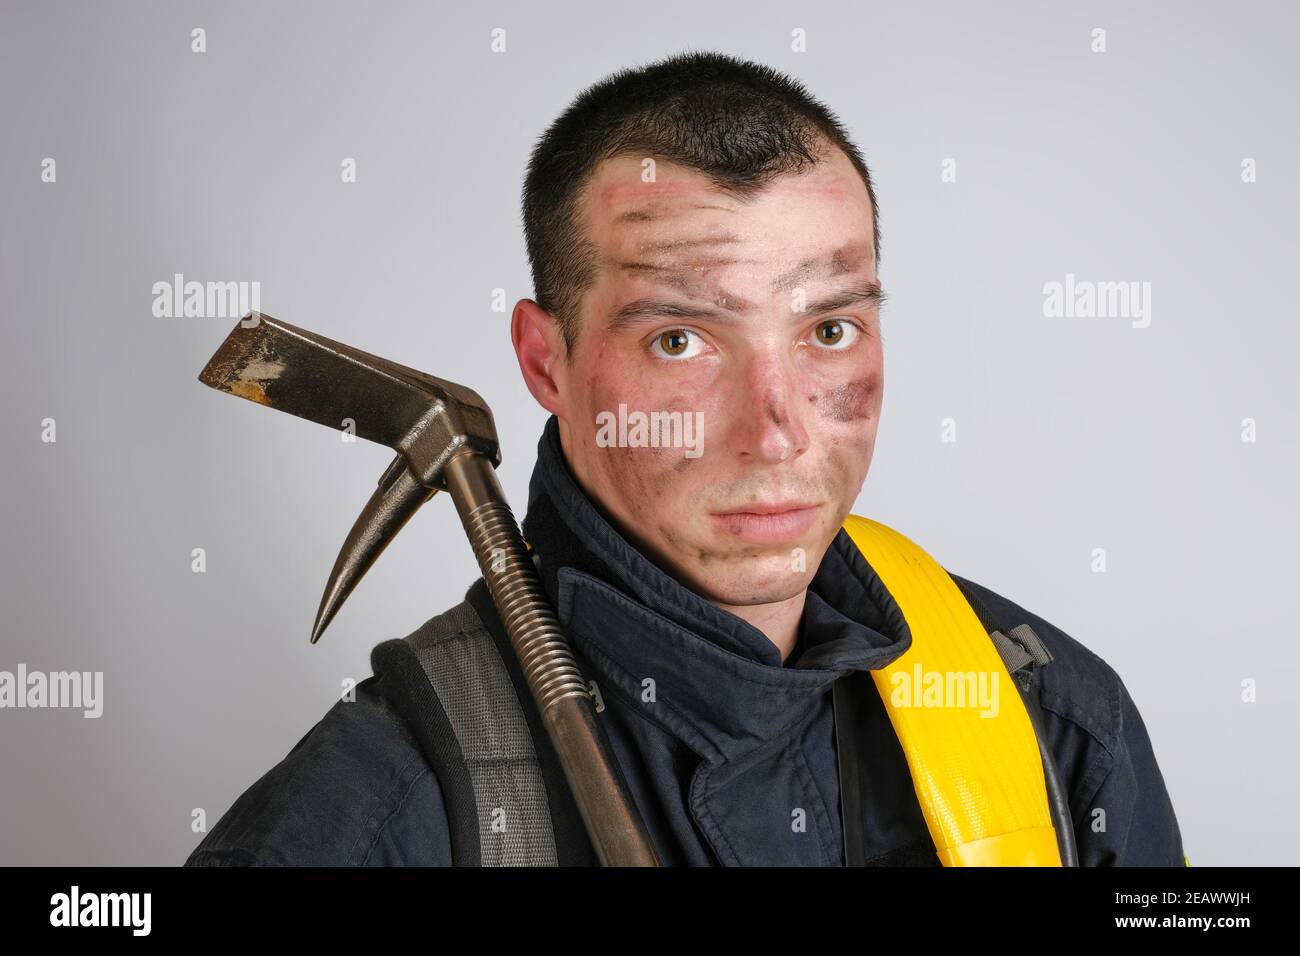 Nahaufnahme Gesicht von jungen tapferen Mann in Uniform der Feuerwehr Und Brecheisen Werkzeug Stockfoto